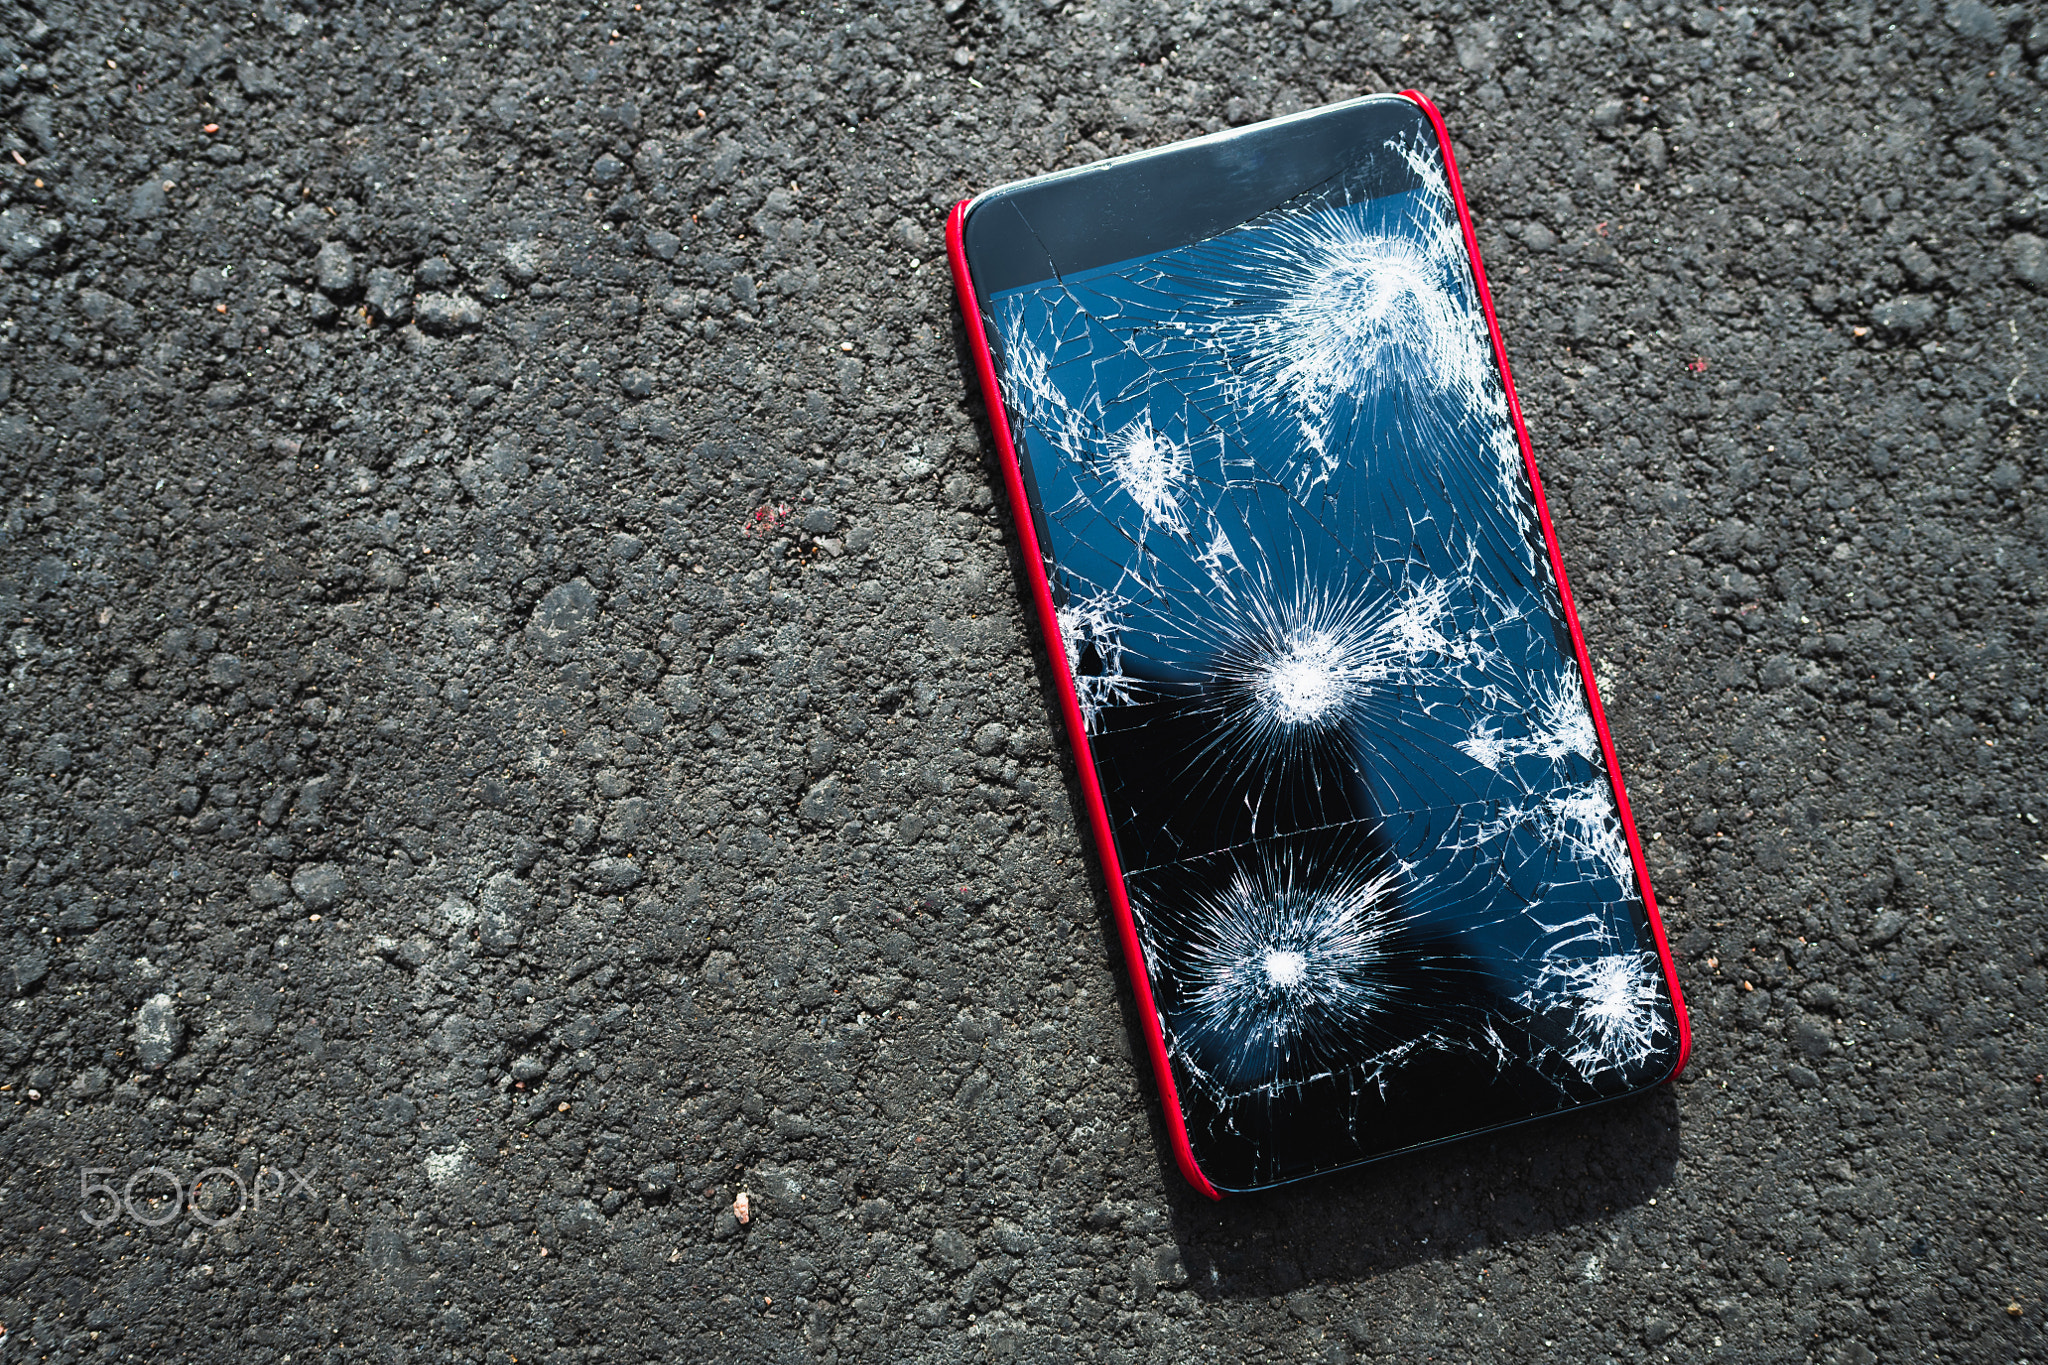 Smartphone with broken screen